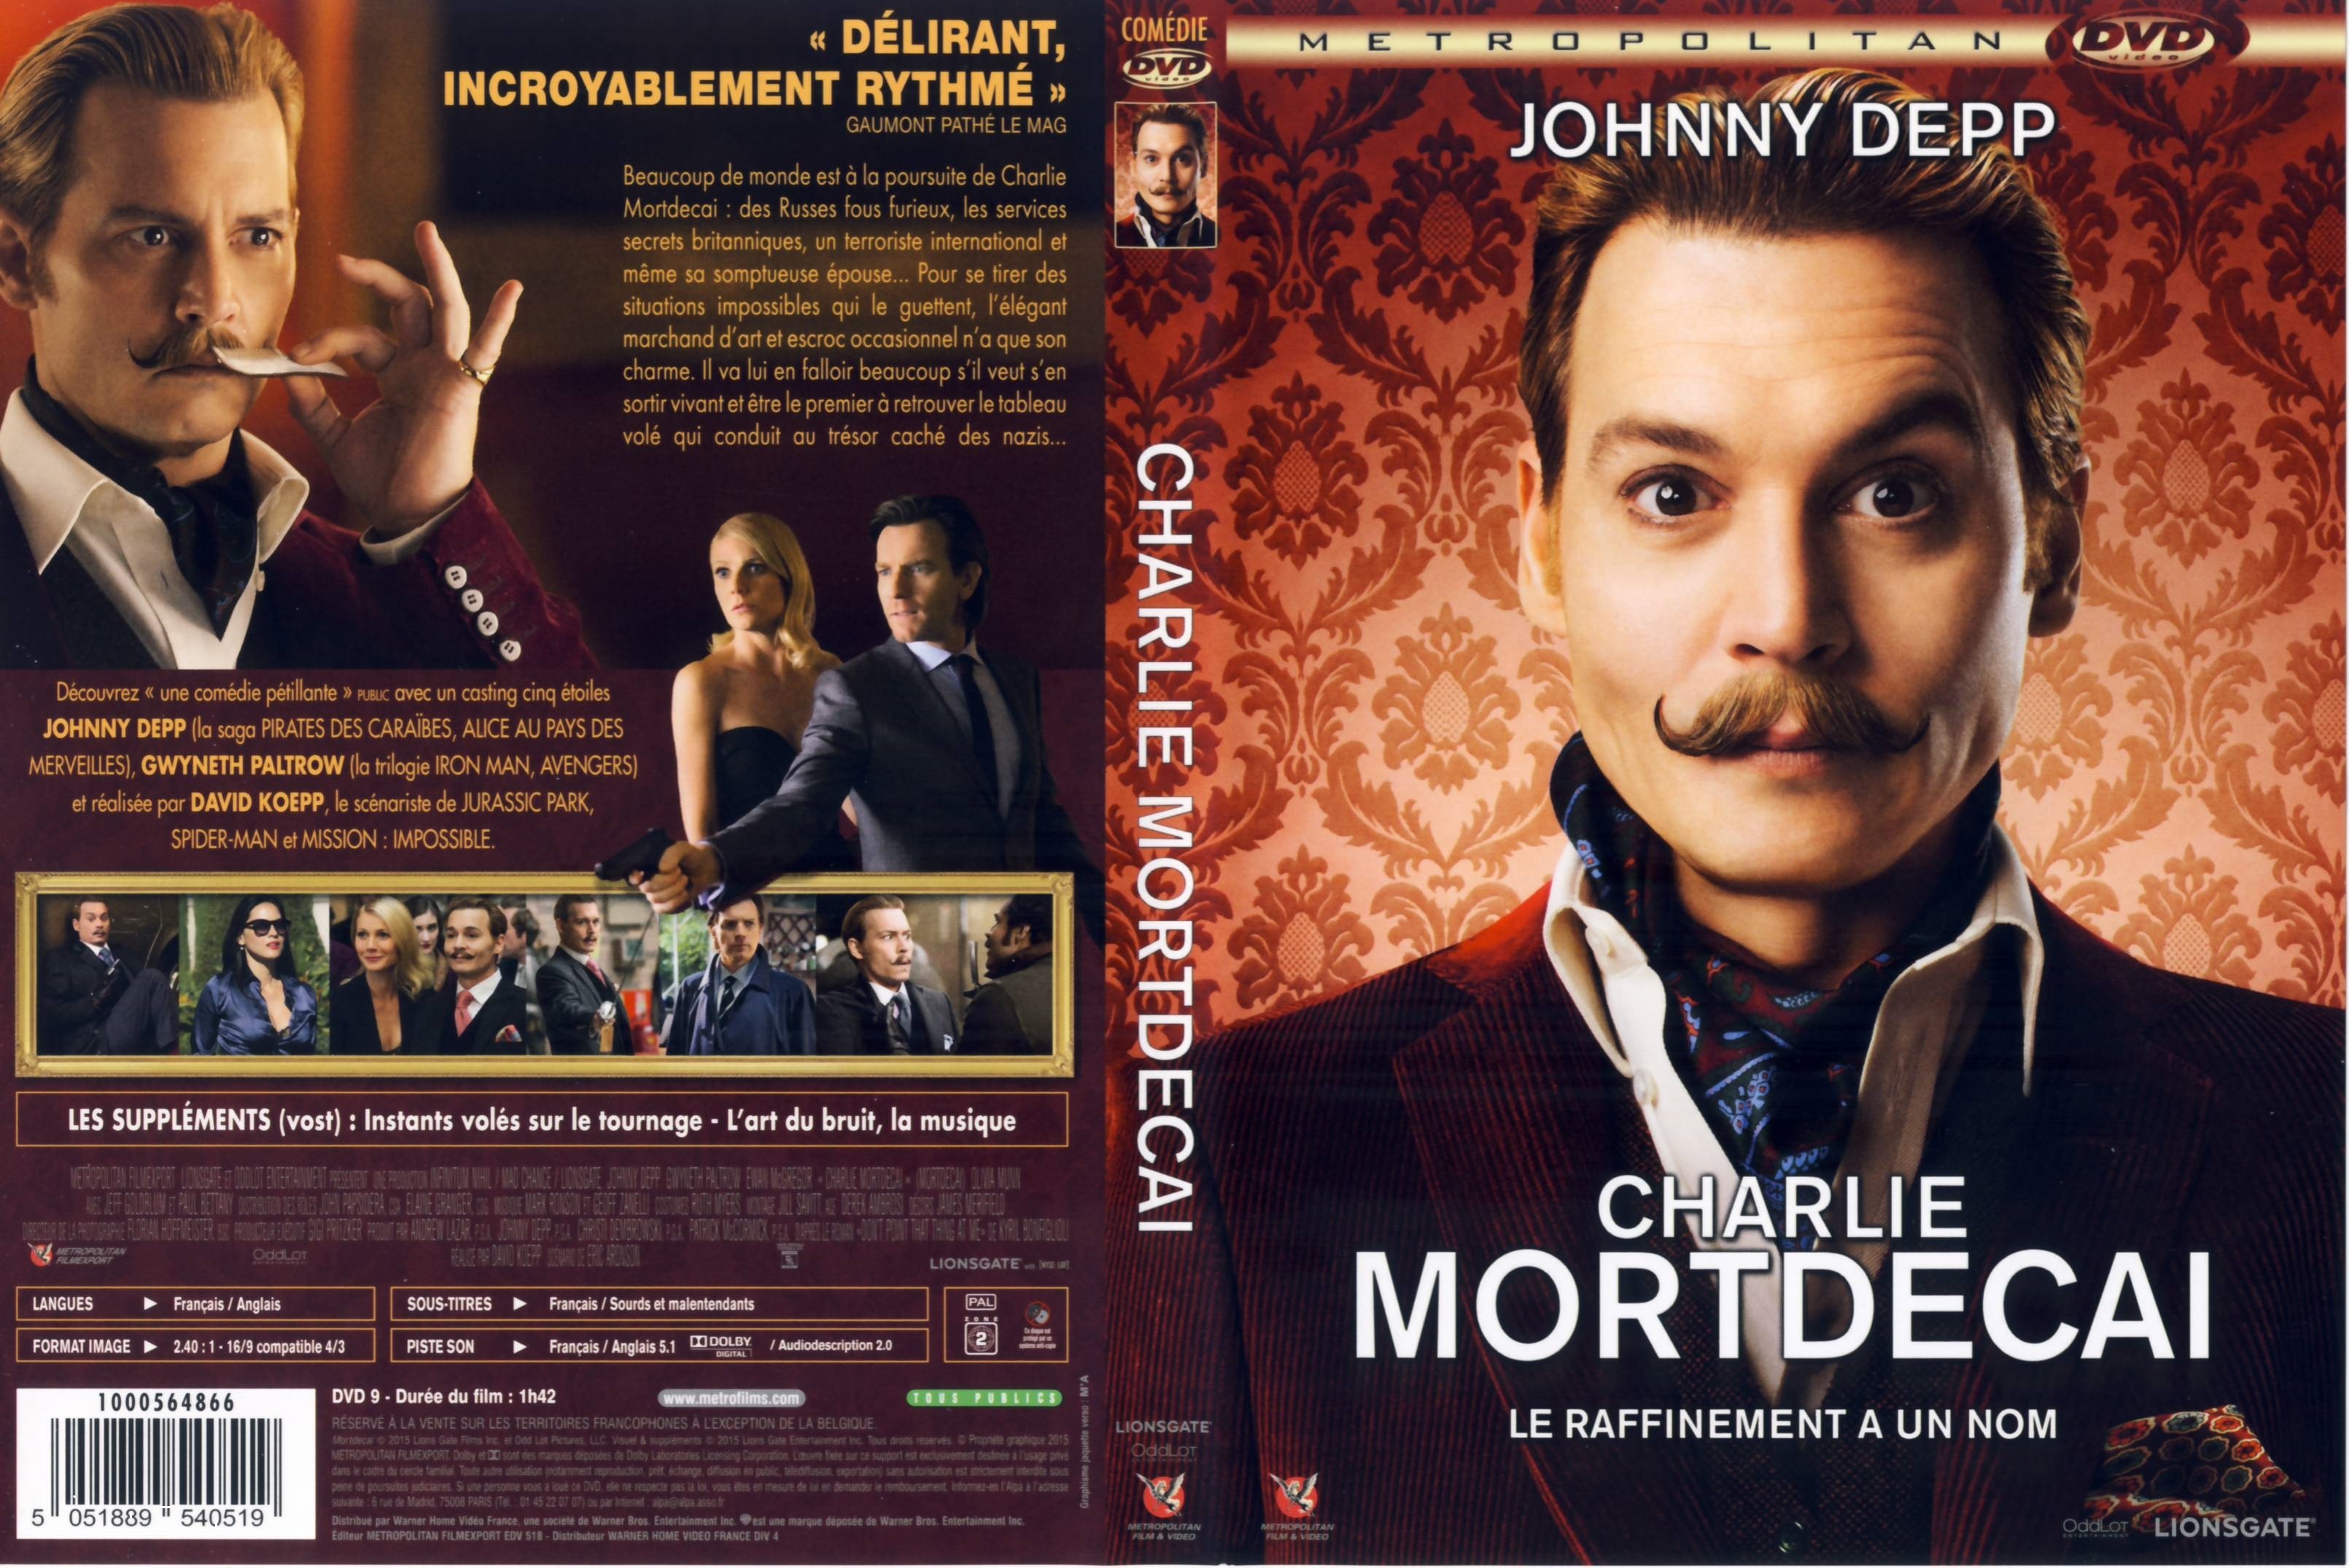 Jaquette DVD Charlie Mortdecai